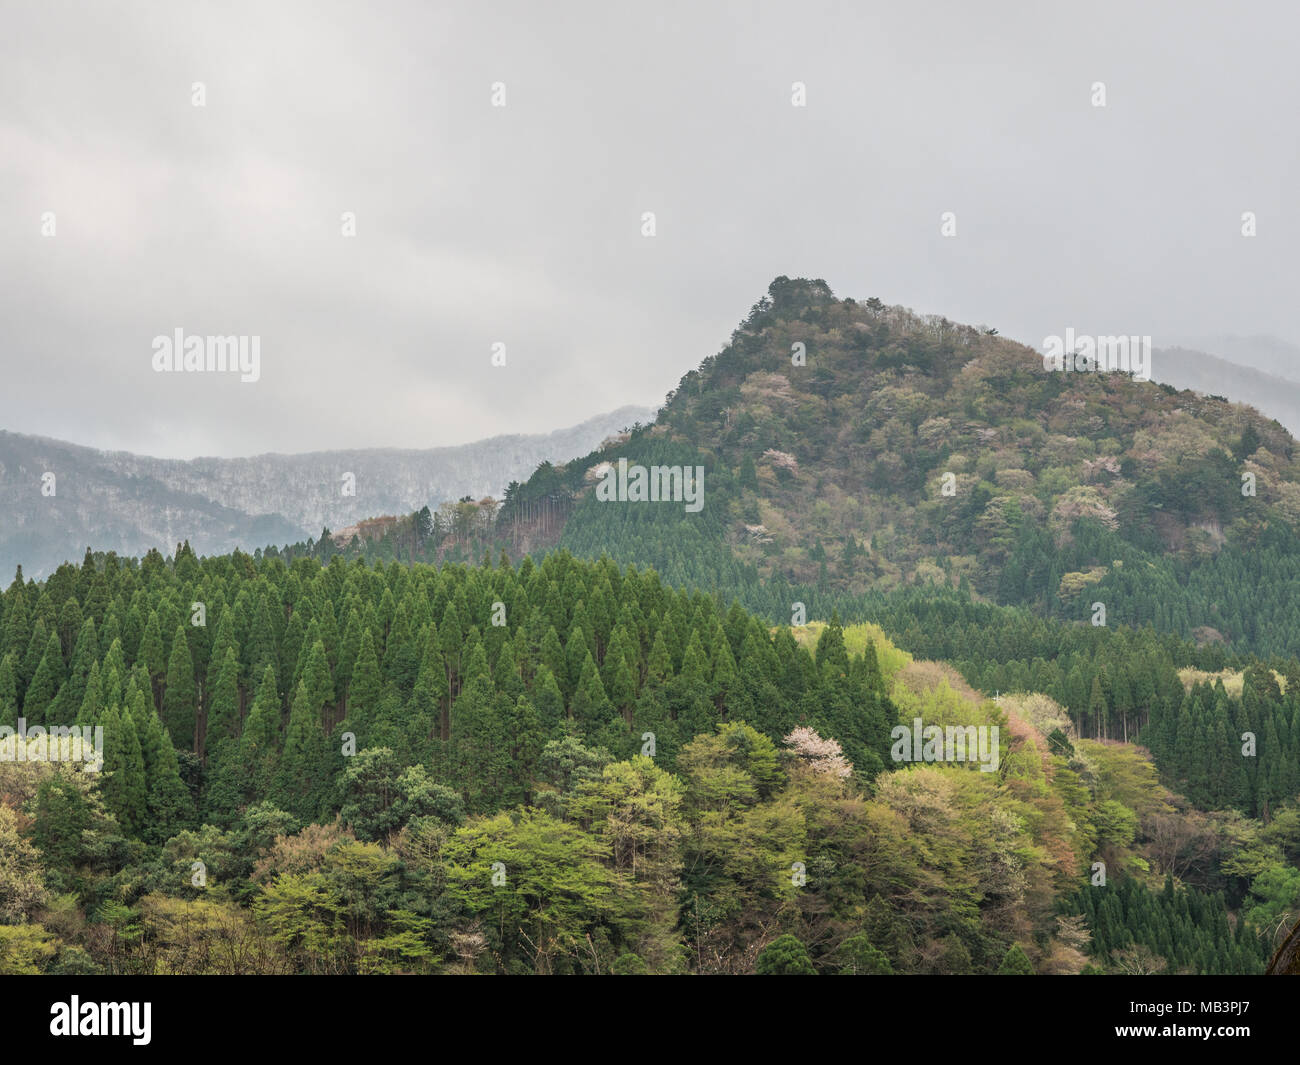 Kobaru, Oita, Kyushu in Giappone. Paesaggio forestale. Cryptomeria japonica, piantate per la produzione di legno e legno naturale foresta di latifoglie. Foto Stock